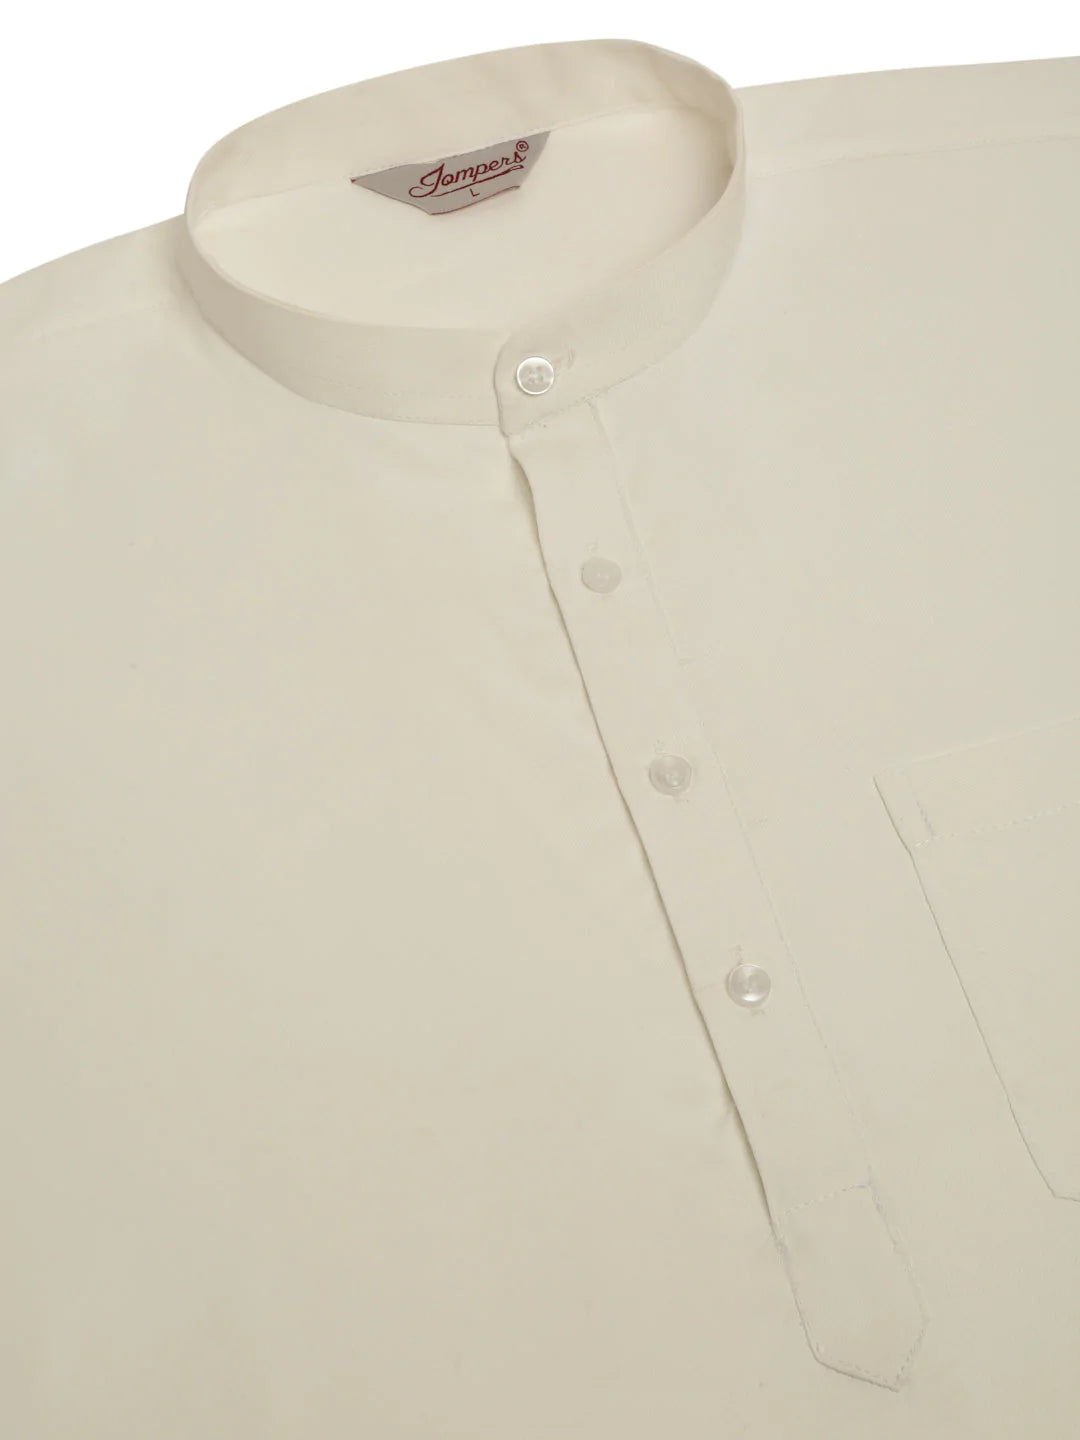 Men's White Solid Cotton Short Kurta ( KO 677 White ) - Virat Fashions